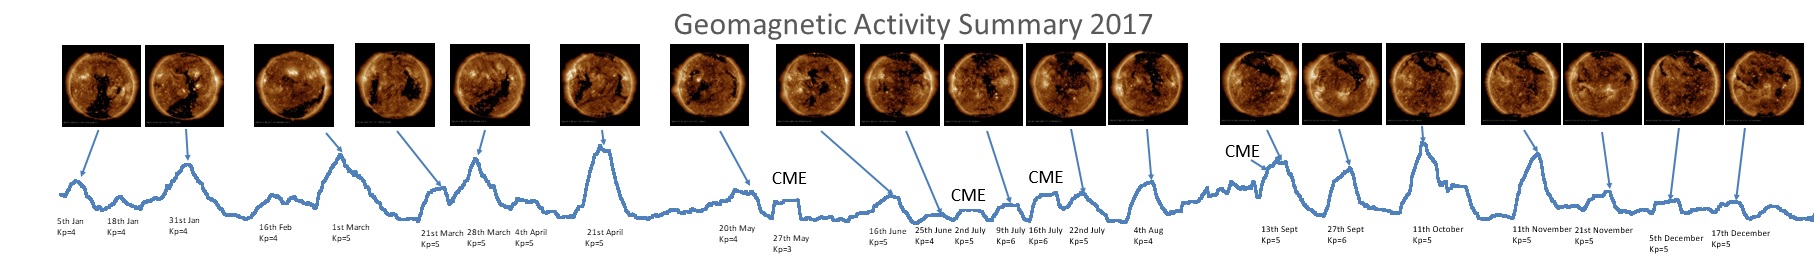 2017 Geomagnetic Summary.jpg